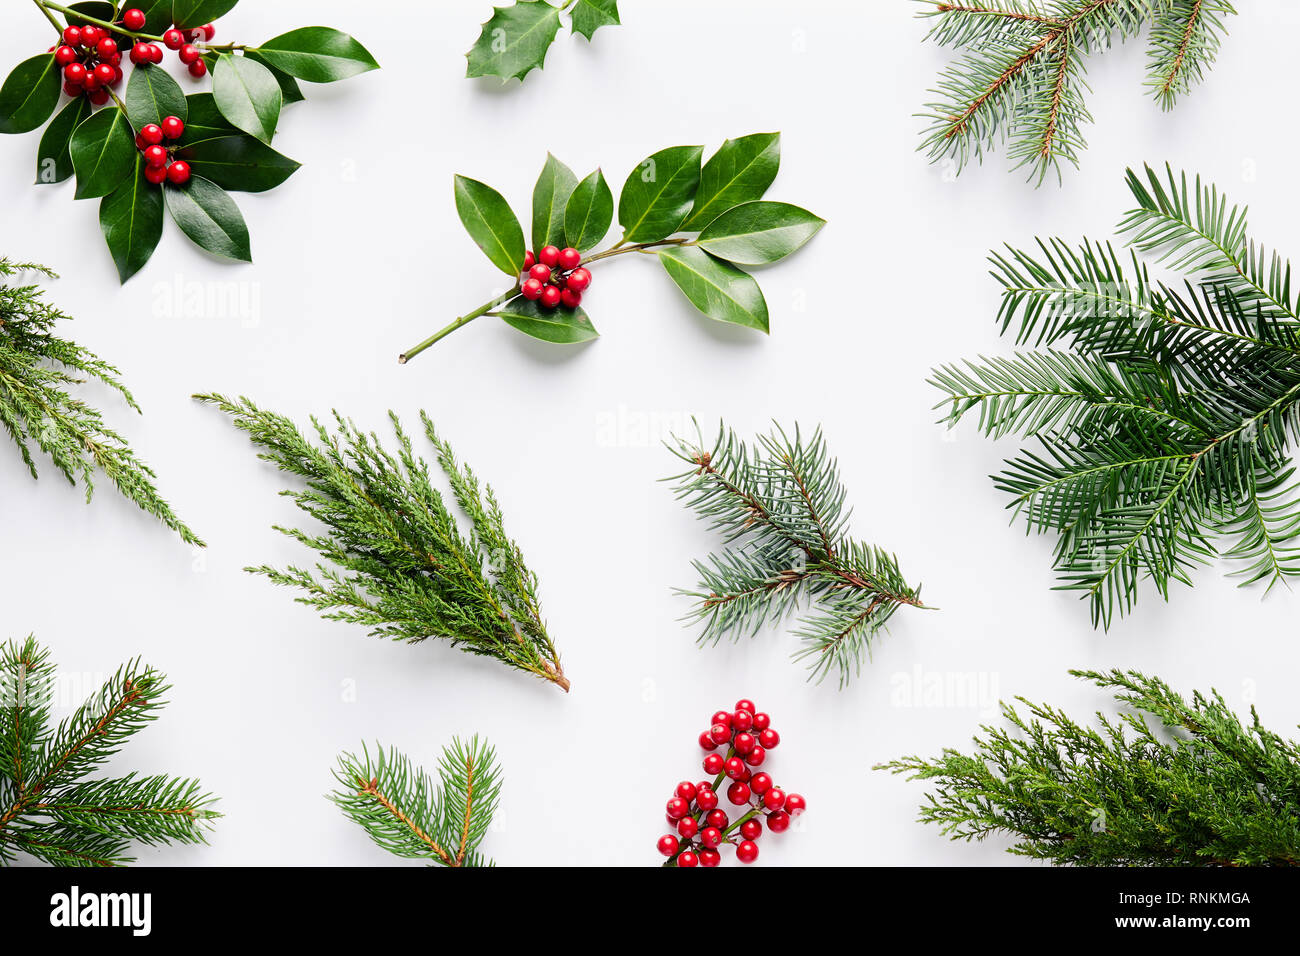 Sammlung des dekorativen Weihnachten Pflanzen mit grünen Blättern und Stechpalme Beeren. Stockfoto